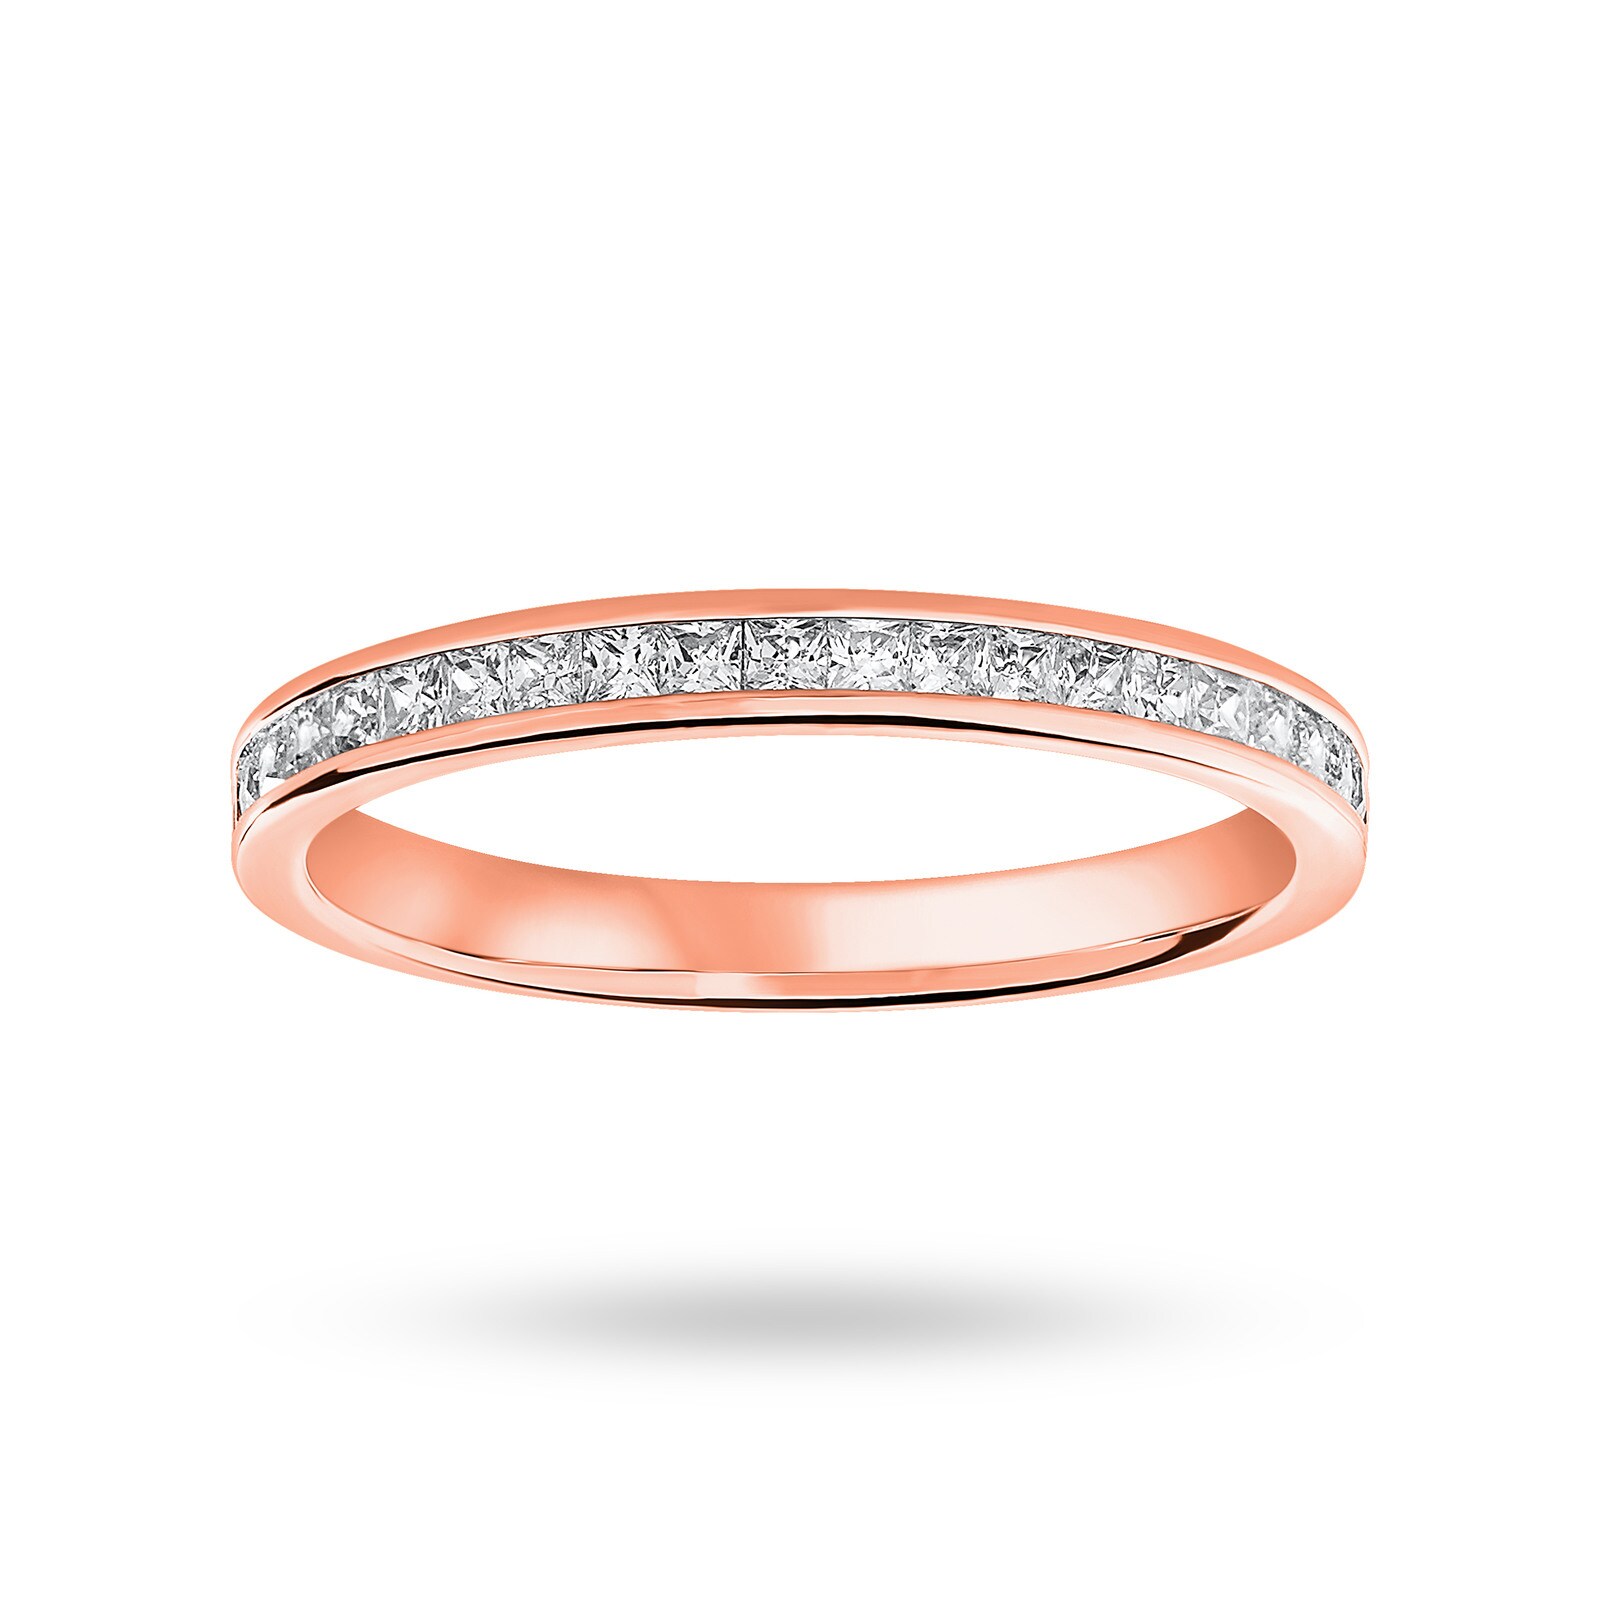 18 Carat Rose Gold 0.33 Carat Princess Cut Half Eternity Ring - Ring Size K